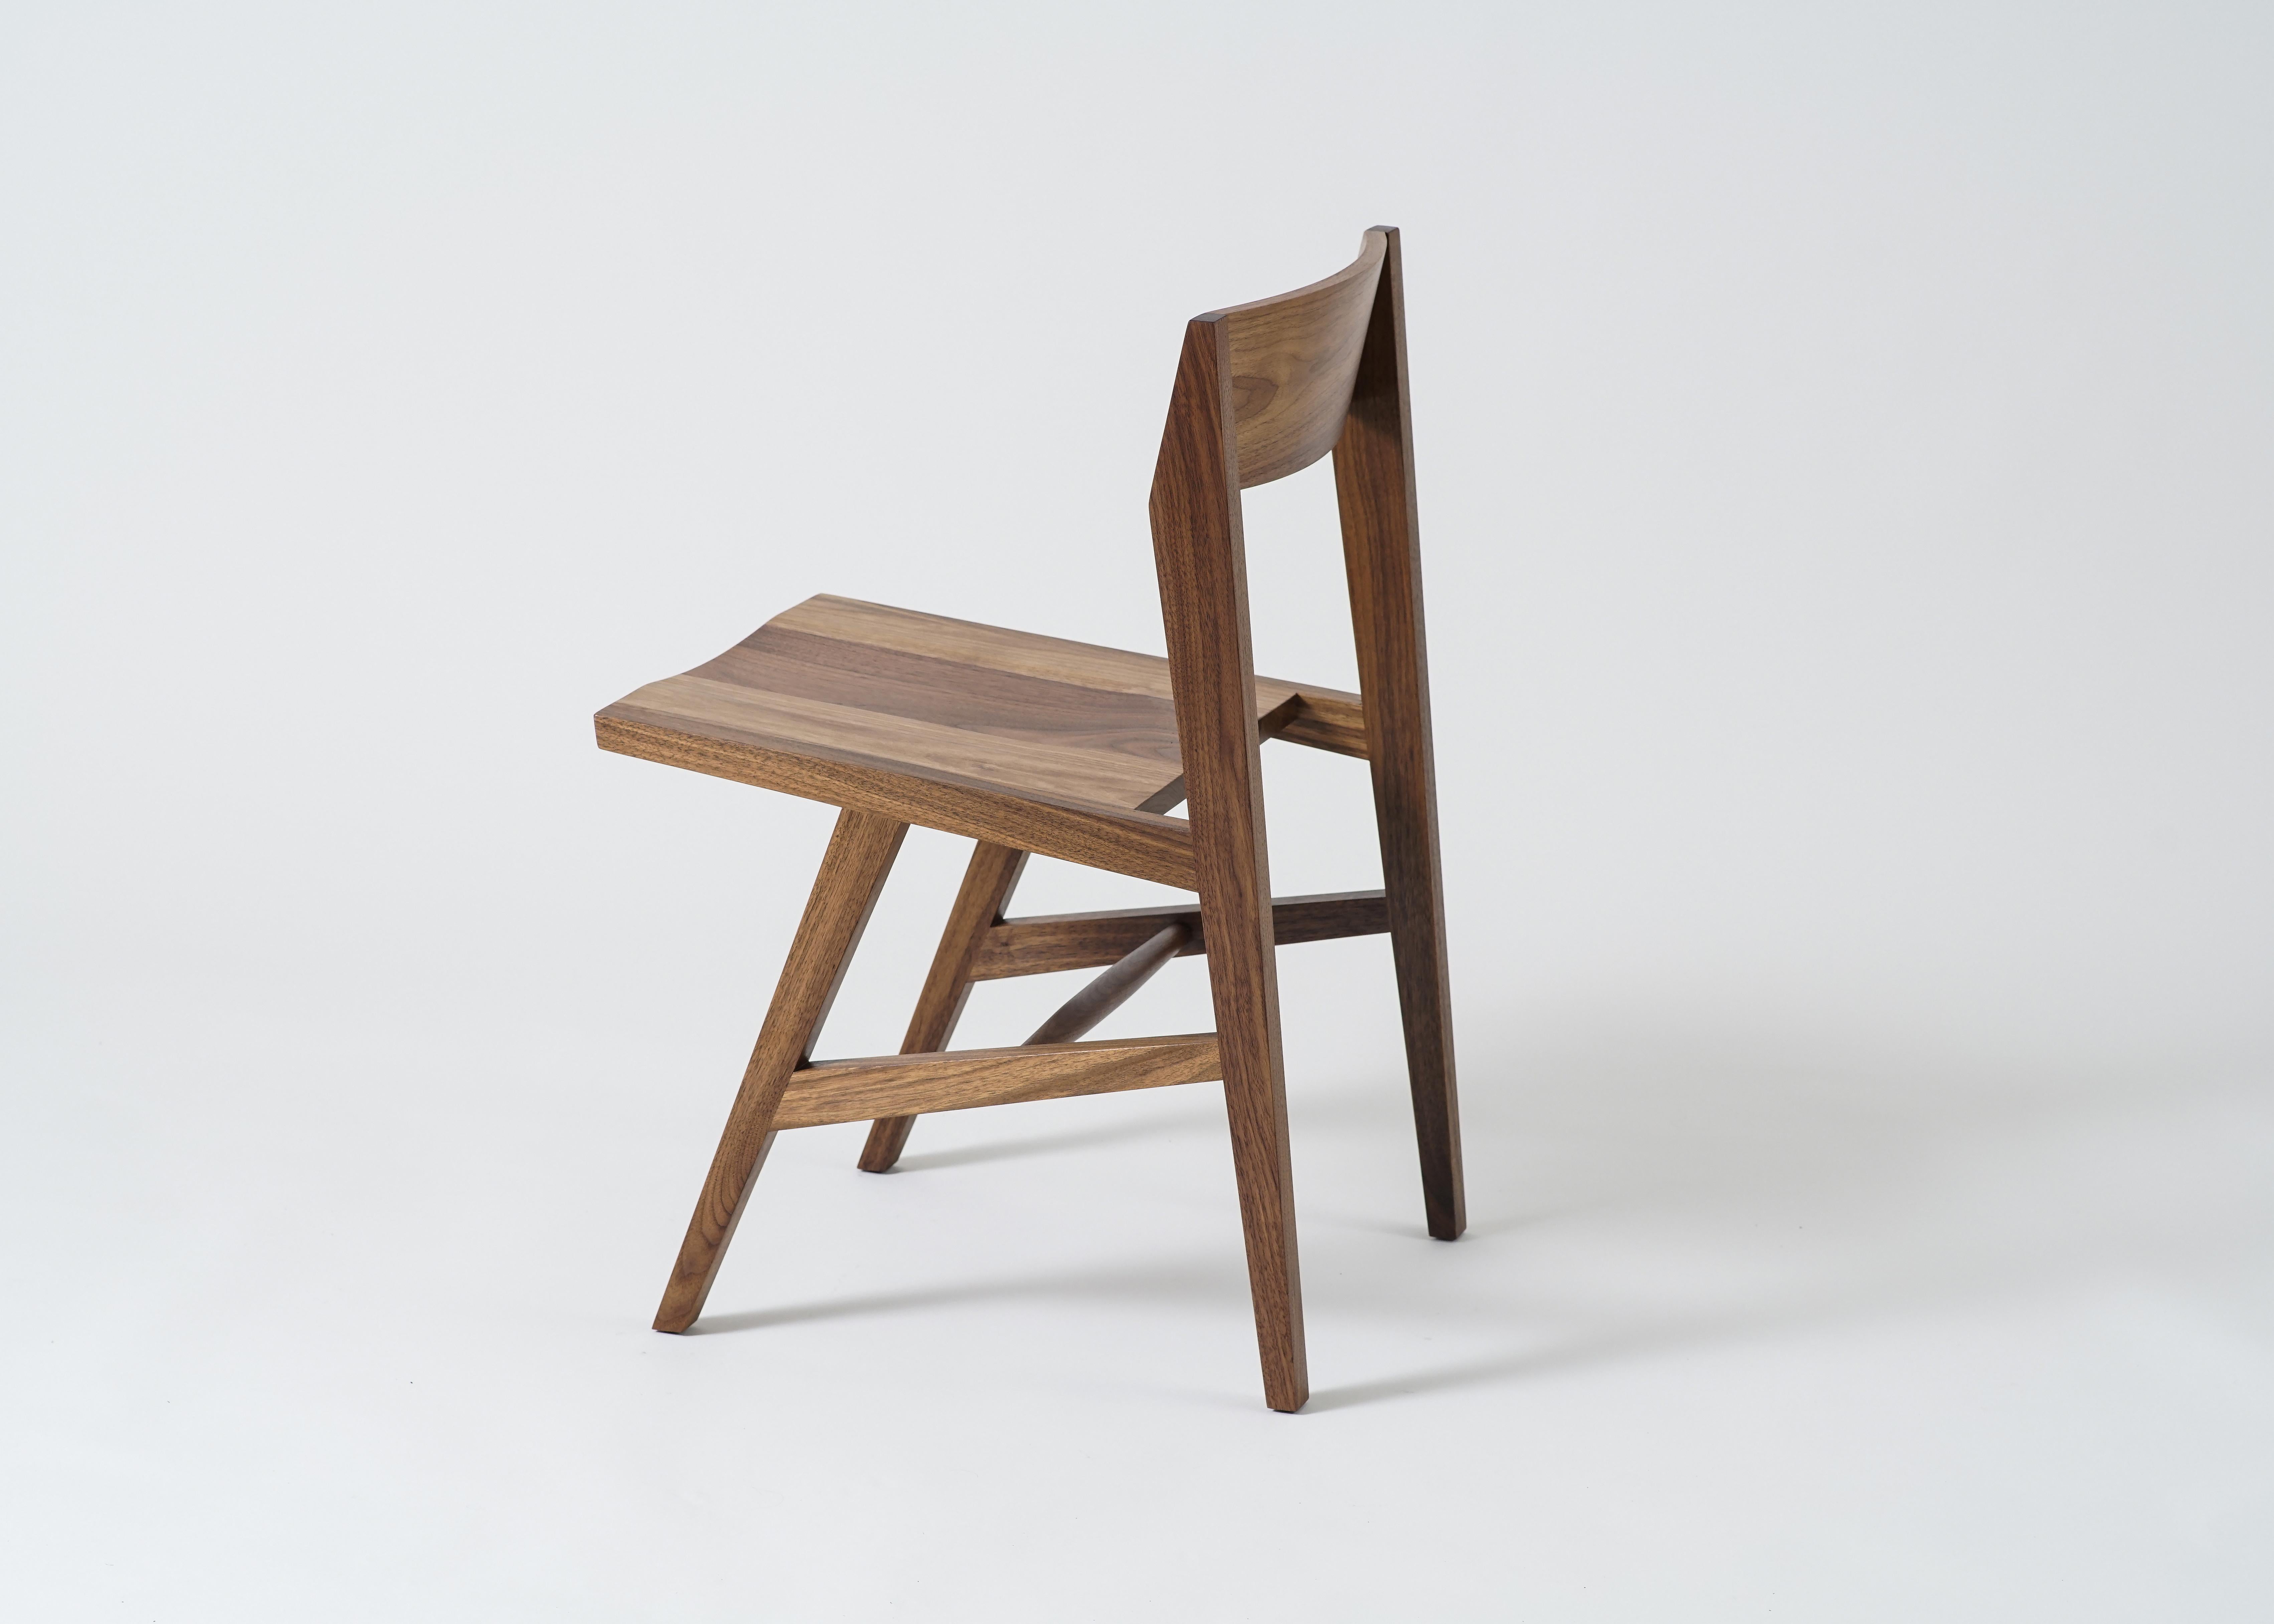 Der Jess Beistellstuhl von Phloem Studio ist ein moderner, zeitgemäßer Massivholz-Esszimmerstuhl aus weißer Eiche mit konisch zulaufenden Hartholzbeinen und einer geschwungenen Rückenlehne aus laminiertem Massivholz. Der Sitz hat ein geschnitztes